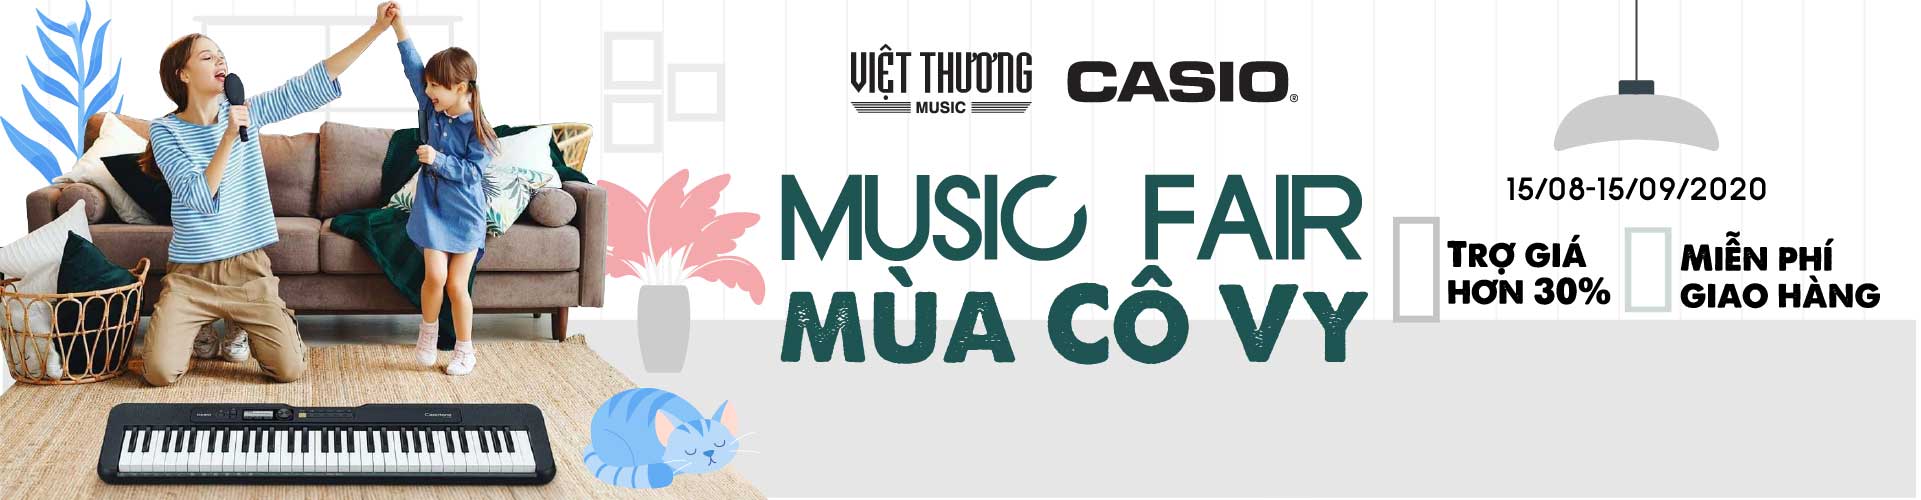 Casio Khuyến Mãi Sốc Việt Thương Music Fair 2020